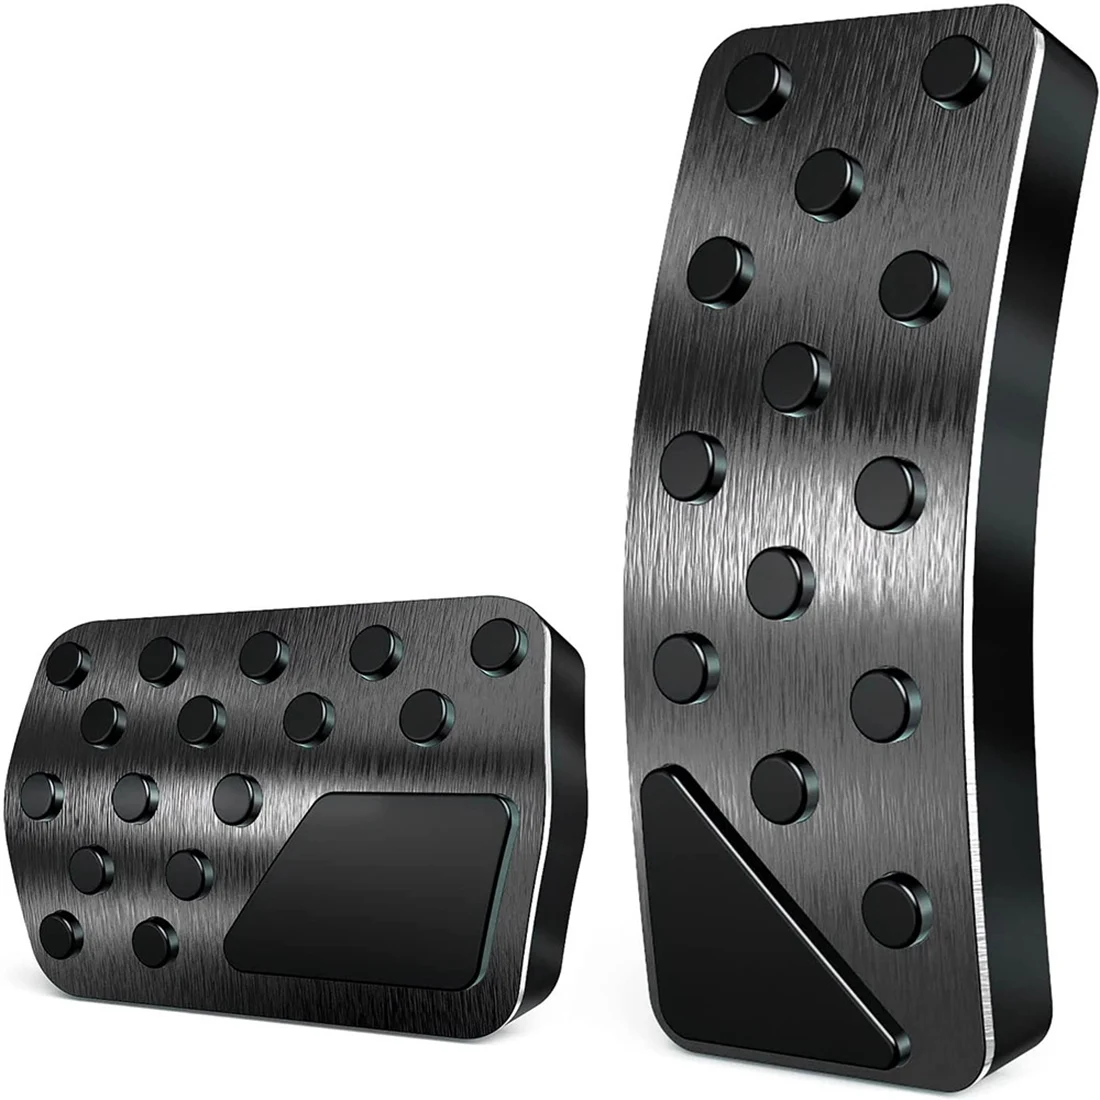 

Для Durango 2011-2021, алюминиевые крышки педали тормоза и акселератора без сверления (черные)